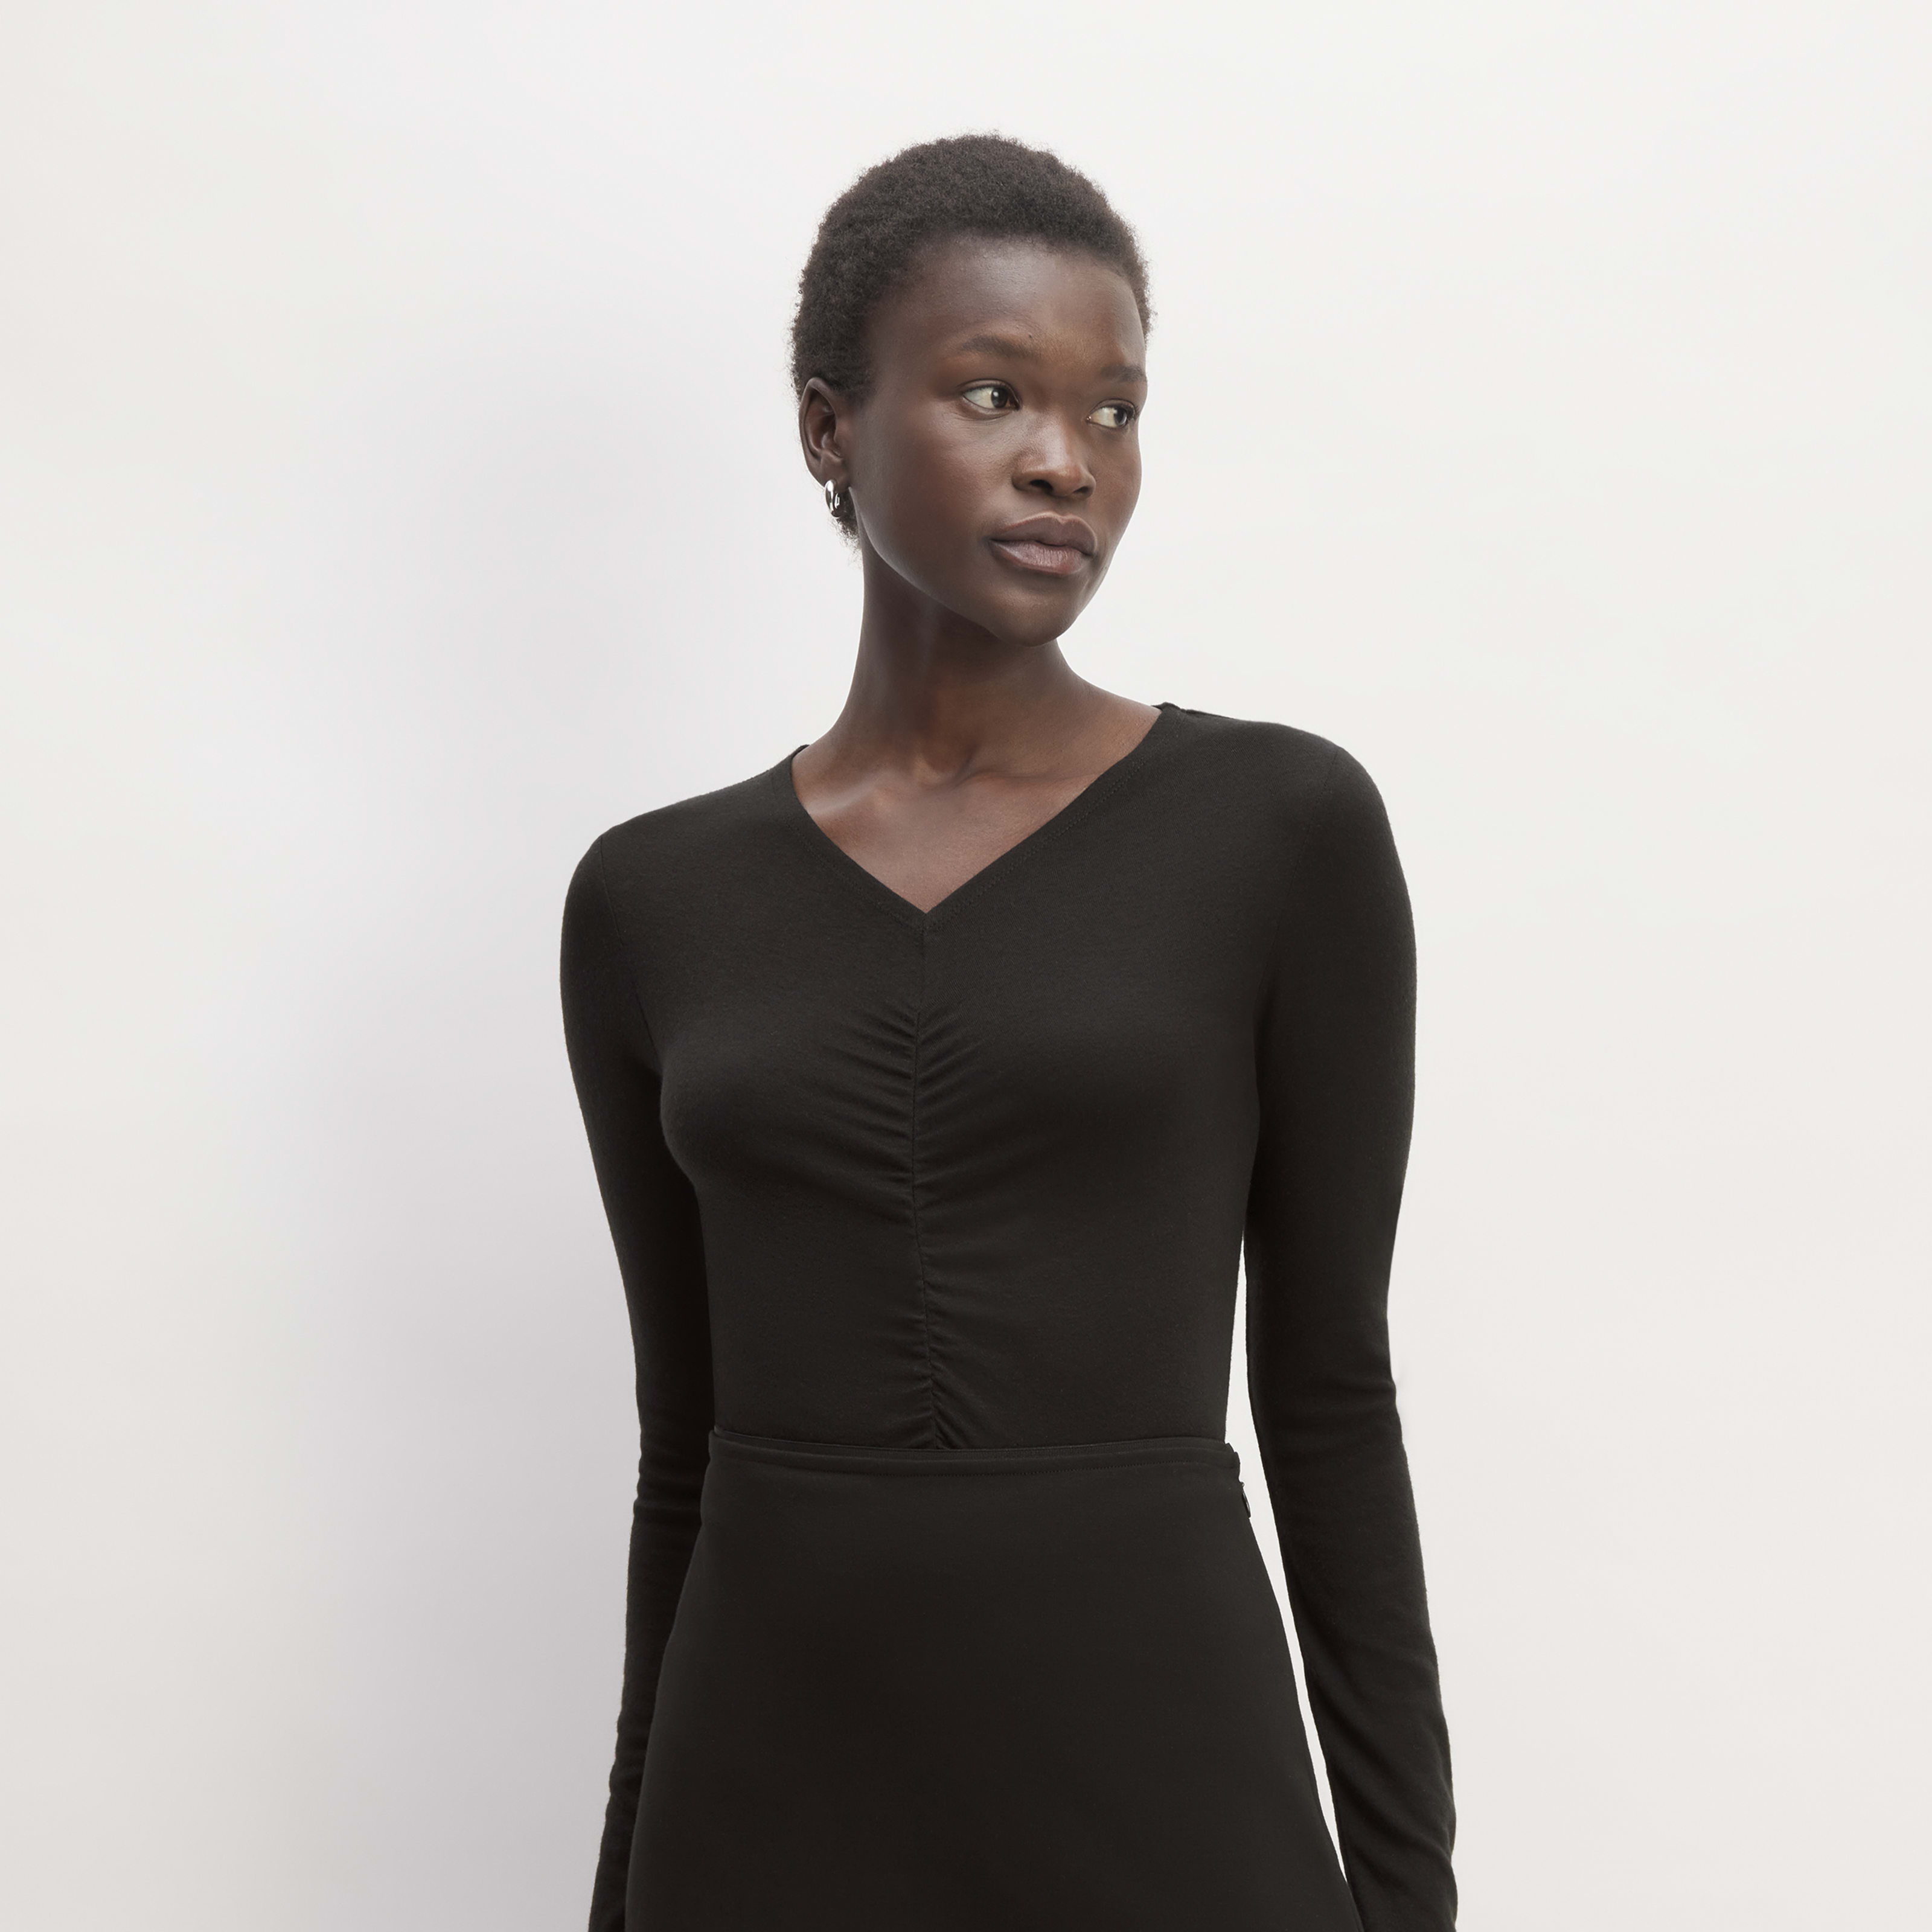 women's merino tencelâ„¢ relaxed v-neck t-shirt by everlane in black, size xxs